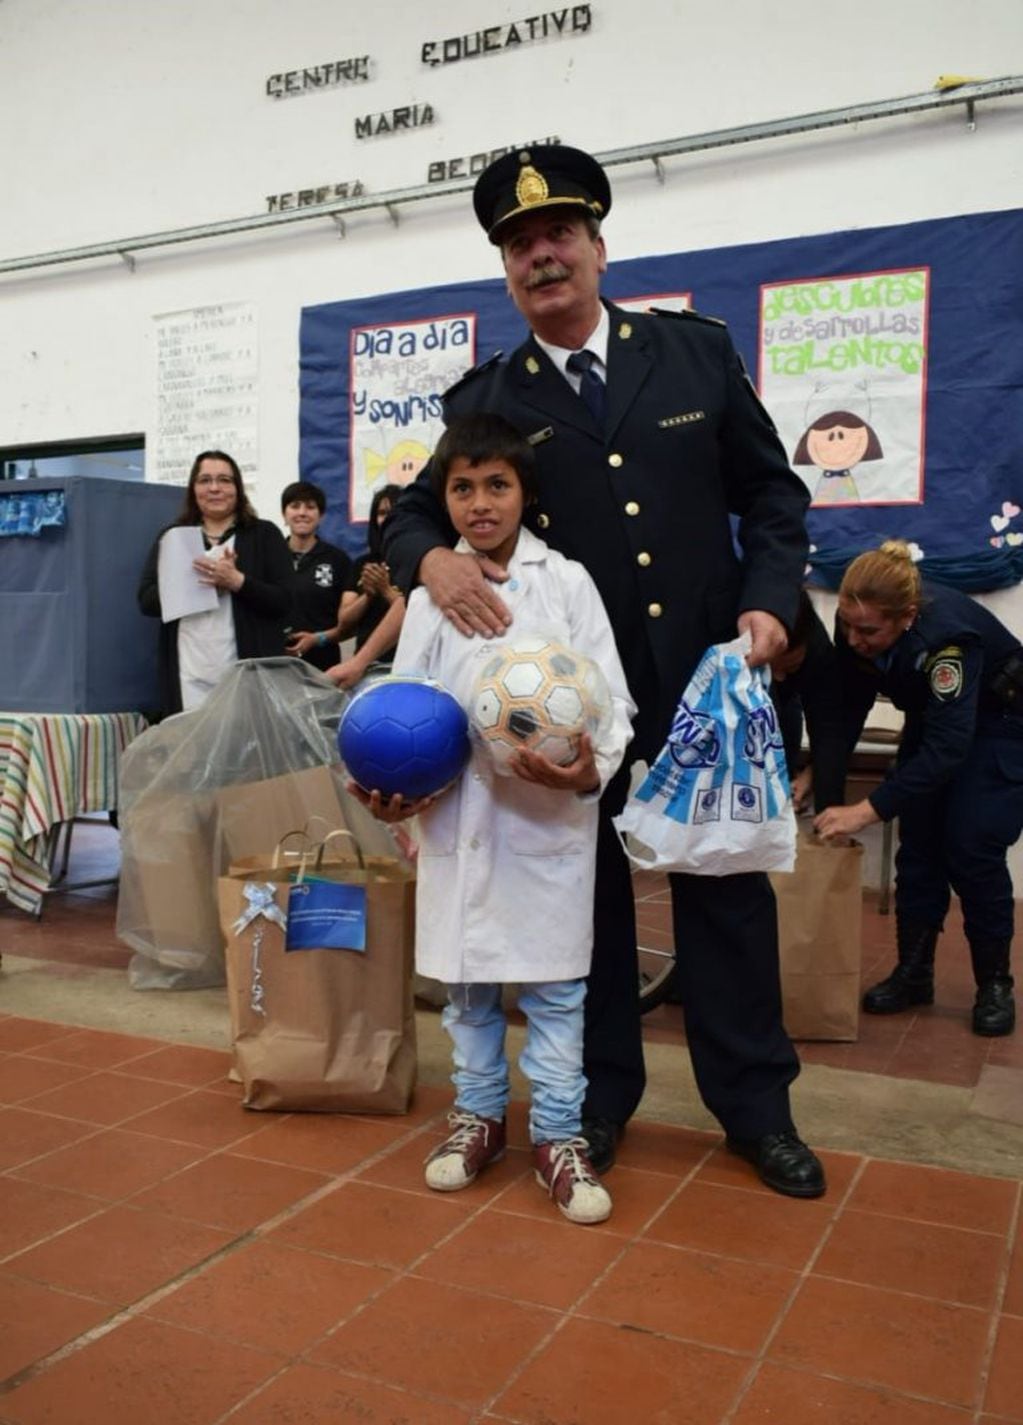 Agustín fue reconocido por la Policía en su colegio tras su gran gesto de devolver la billetera con 25 mil pesos.